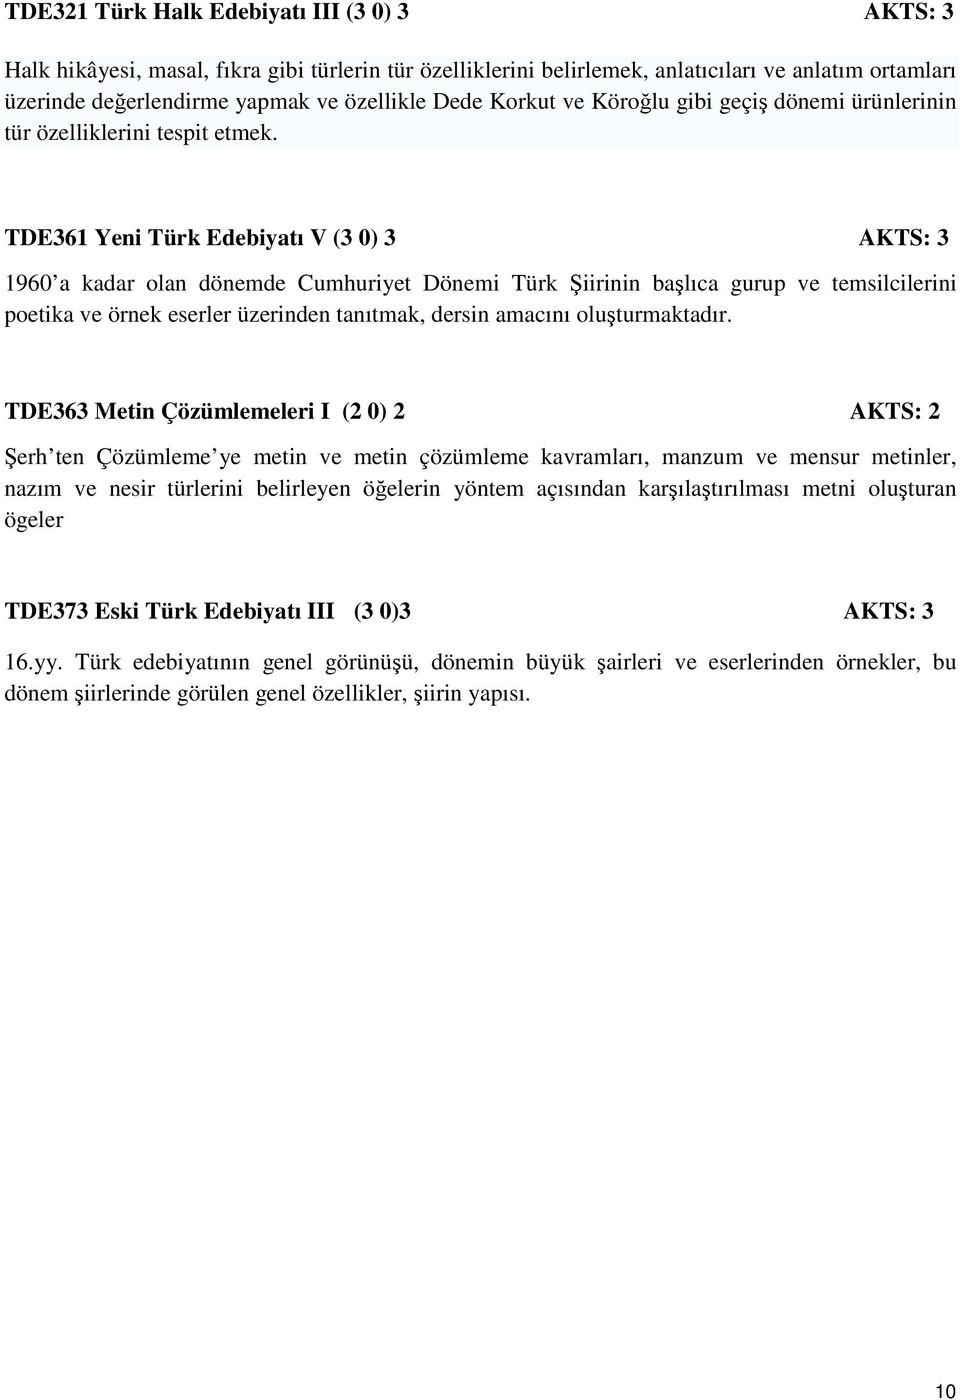 TDE361 Yeni Türk Edebiyatı V (3 0) 3 AKTS: 3 1960 a kadar olan dönemde Cumhuriyet Dönemi Türk Şiirinin başlıca gurup ve temsilcilerini poetika ve örnek eserler üzerinden tanıtmak, dersin amacını